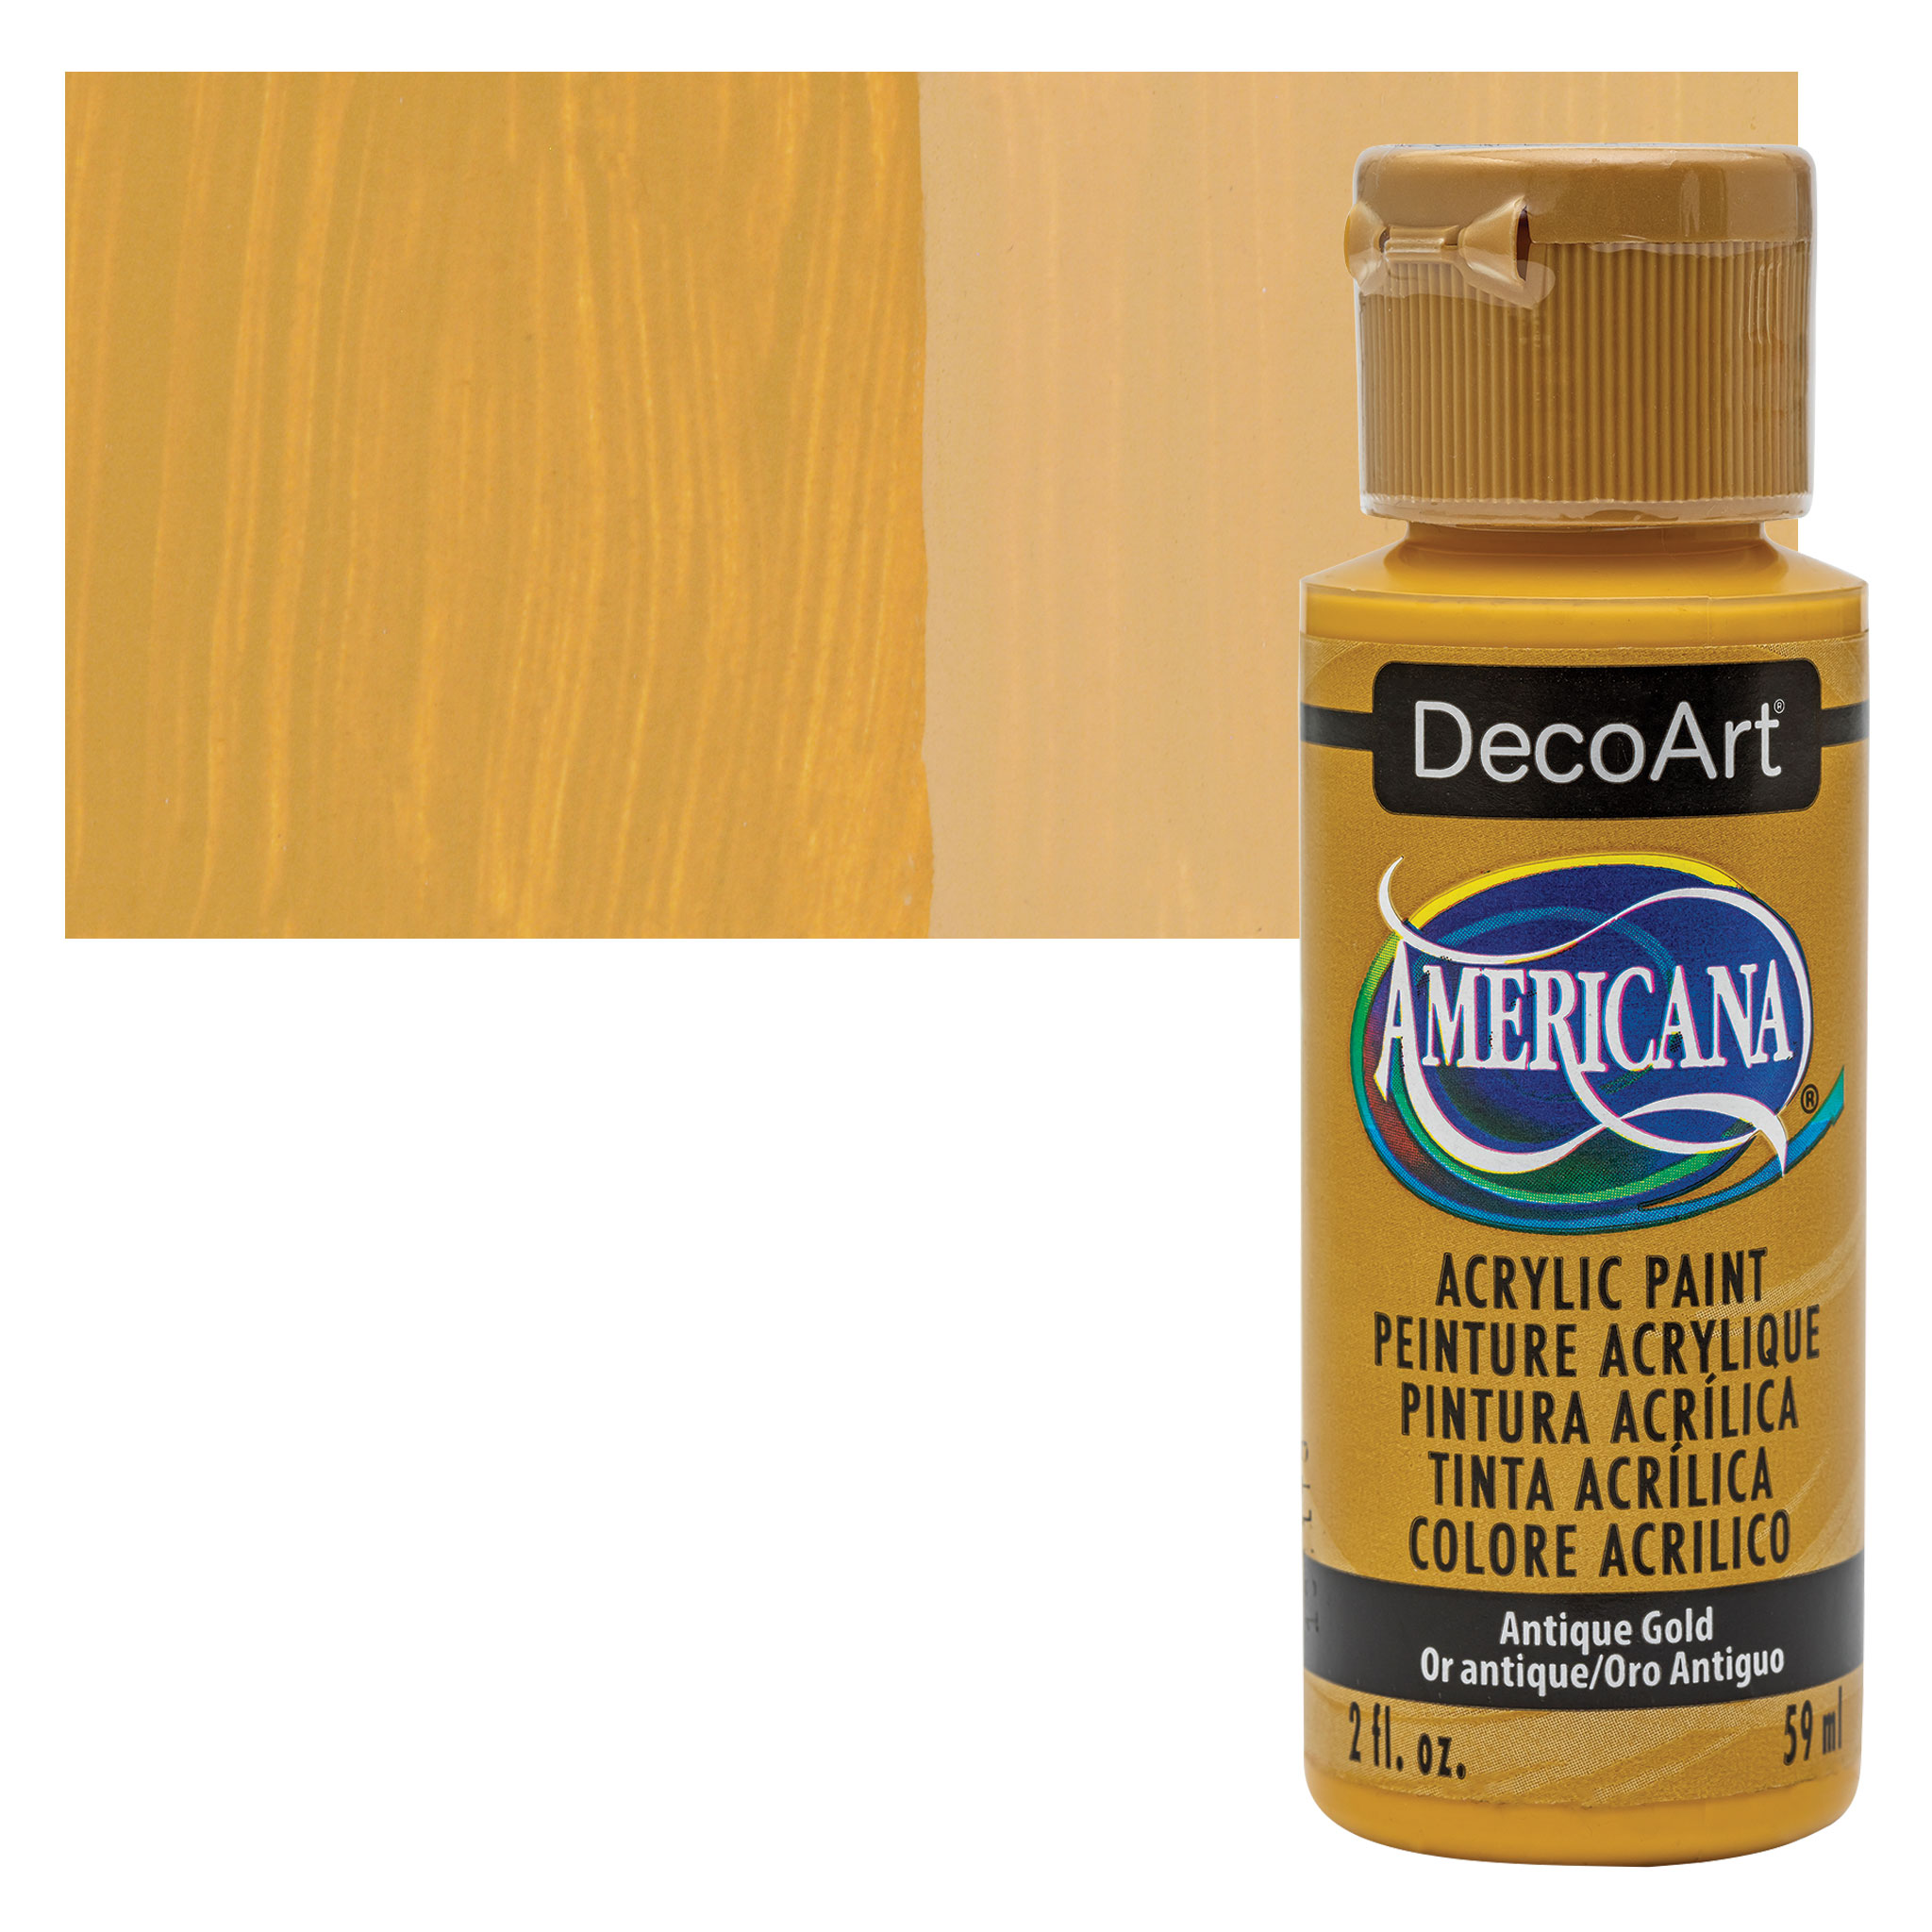 Antique Gold DecoArt Acrylic Paints - DAO9 - Antique Gold Paint